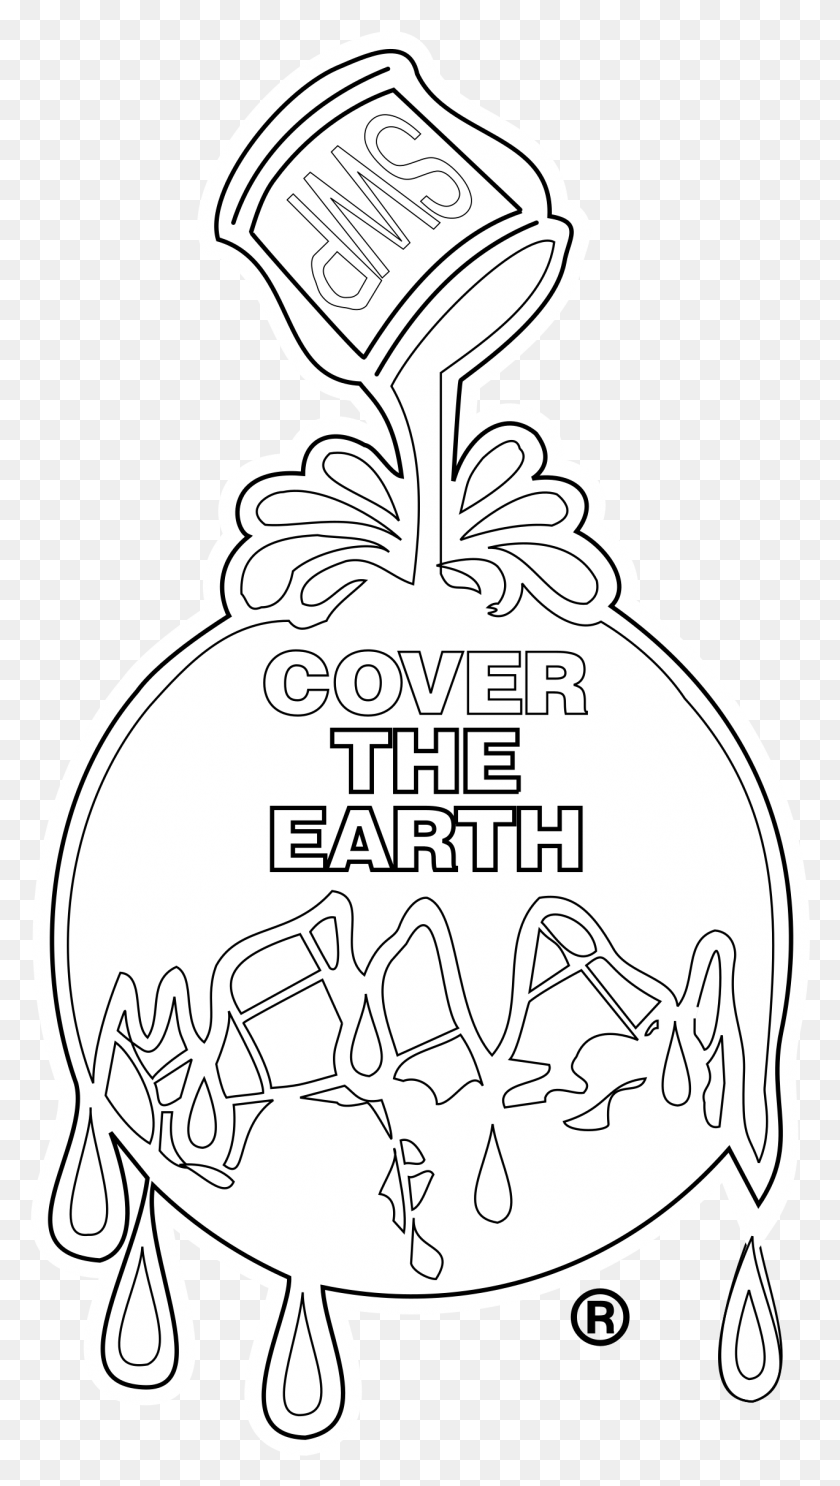 1272x2327 Descargar Cover The Earth Logo, Cover The Earth, Adorno, Bolsa, Saco Hd Png